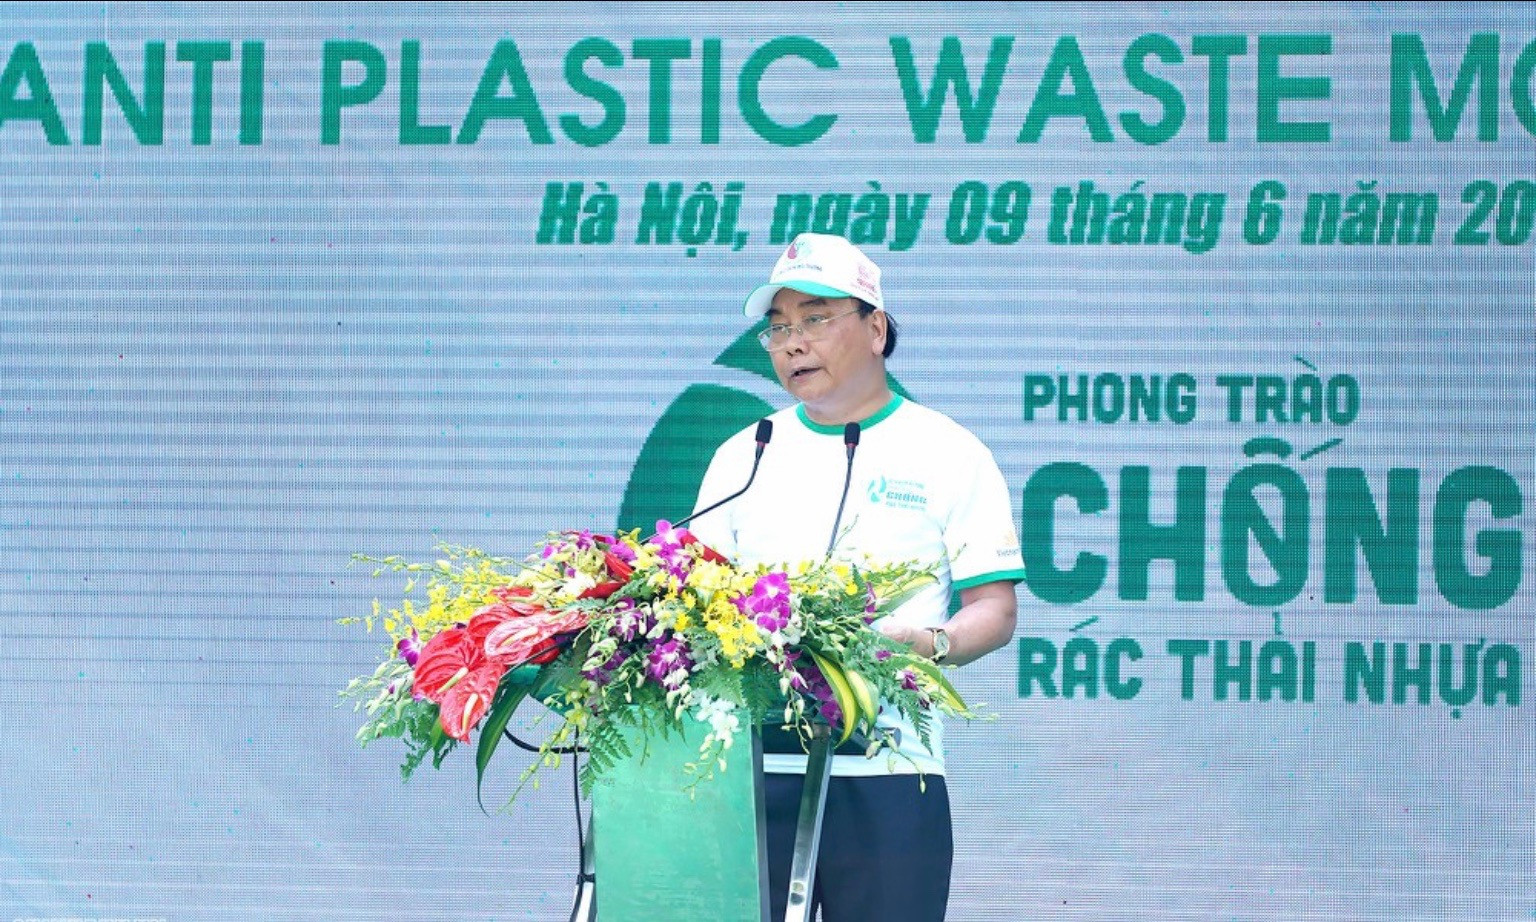 Thủ Tướng phát động toàn quốc chống rác thải nhựa